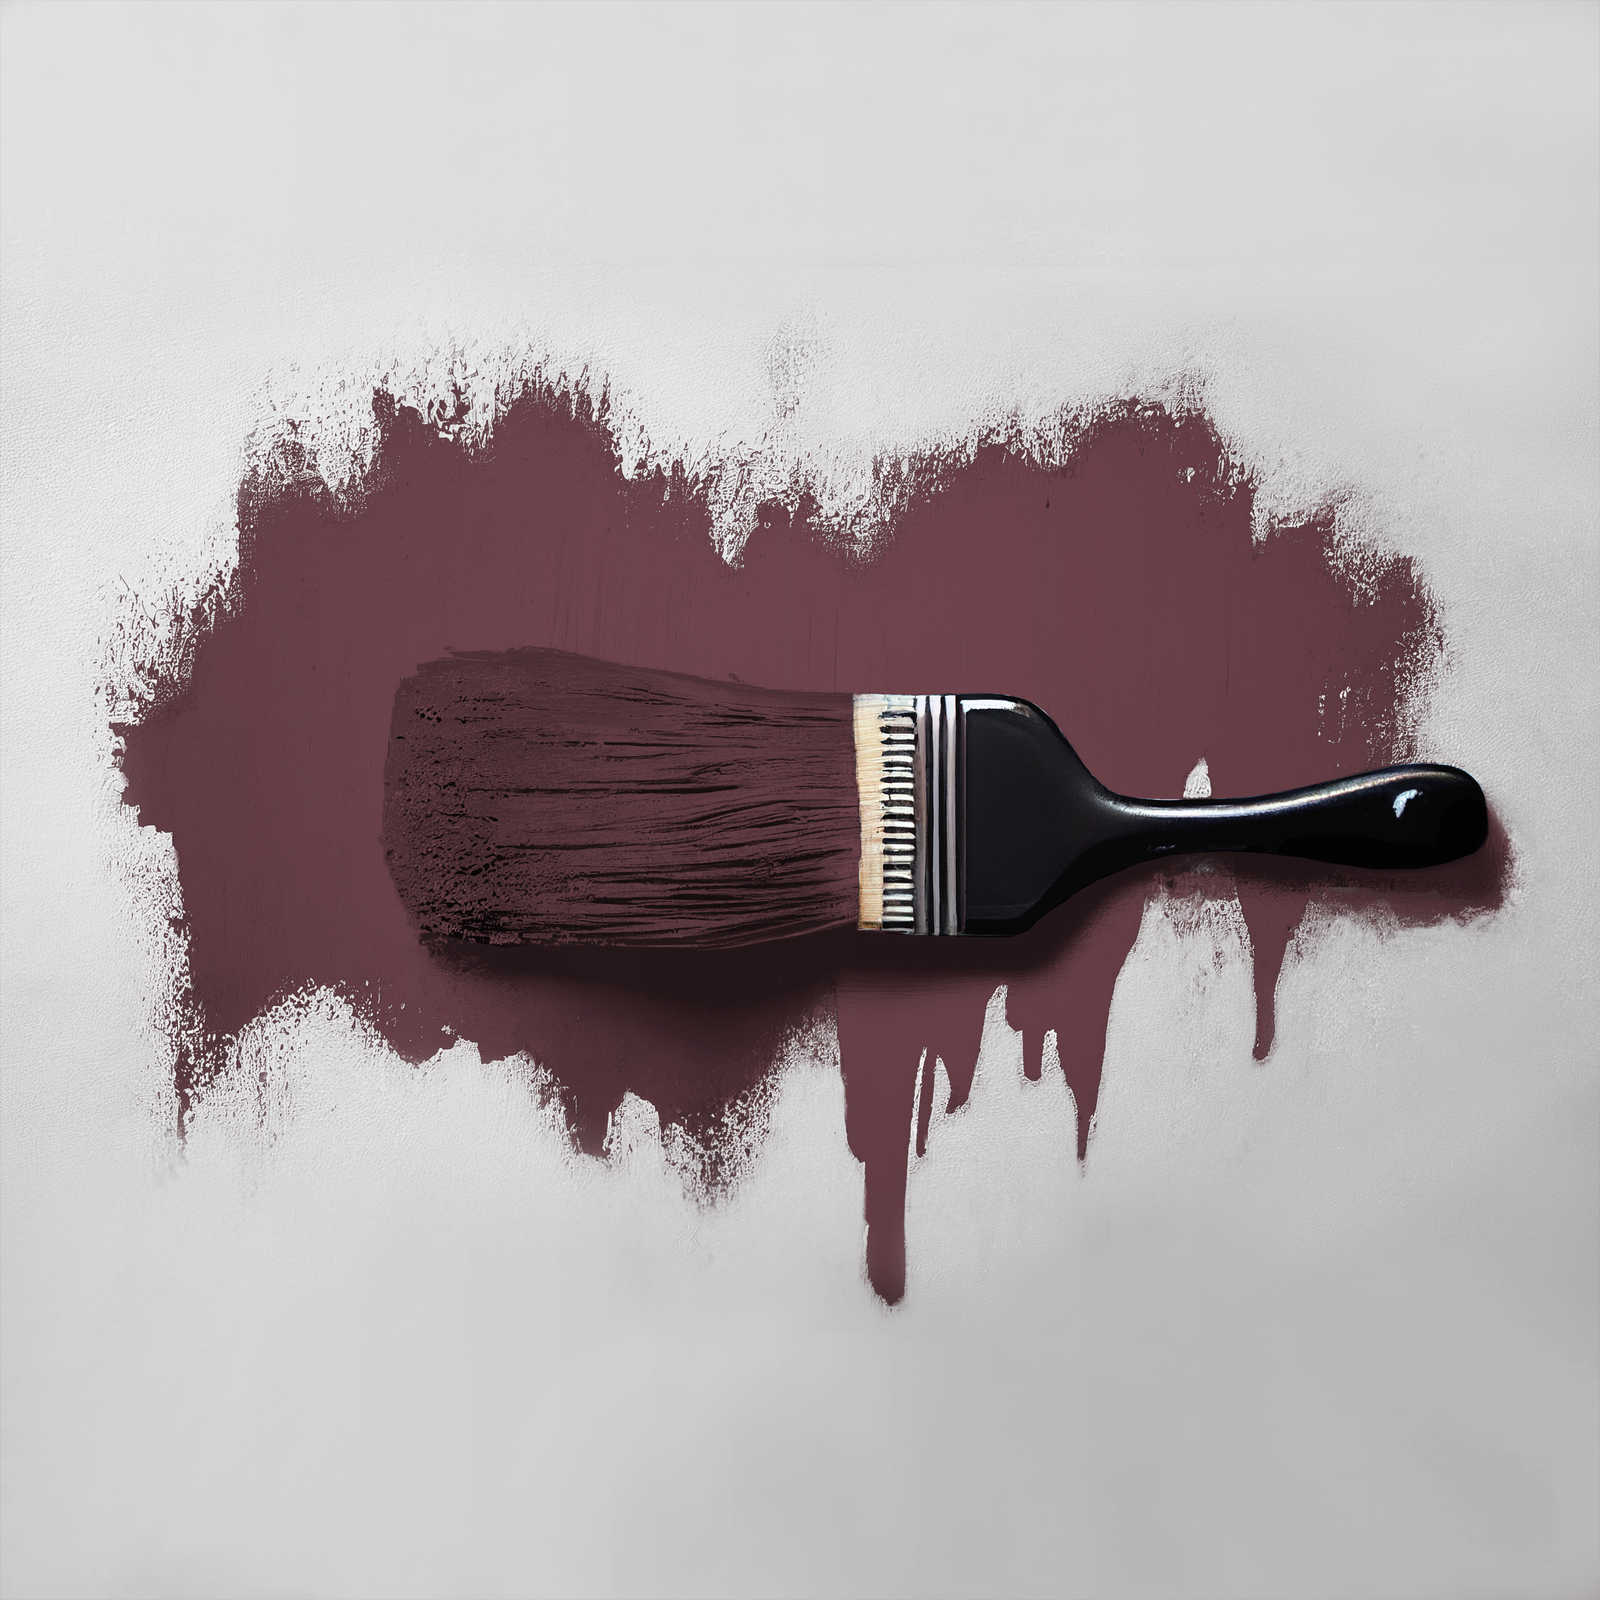             Peinture murale TCK7013 »Red Wine« en bordeaux intense – 5,0 litres
        